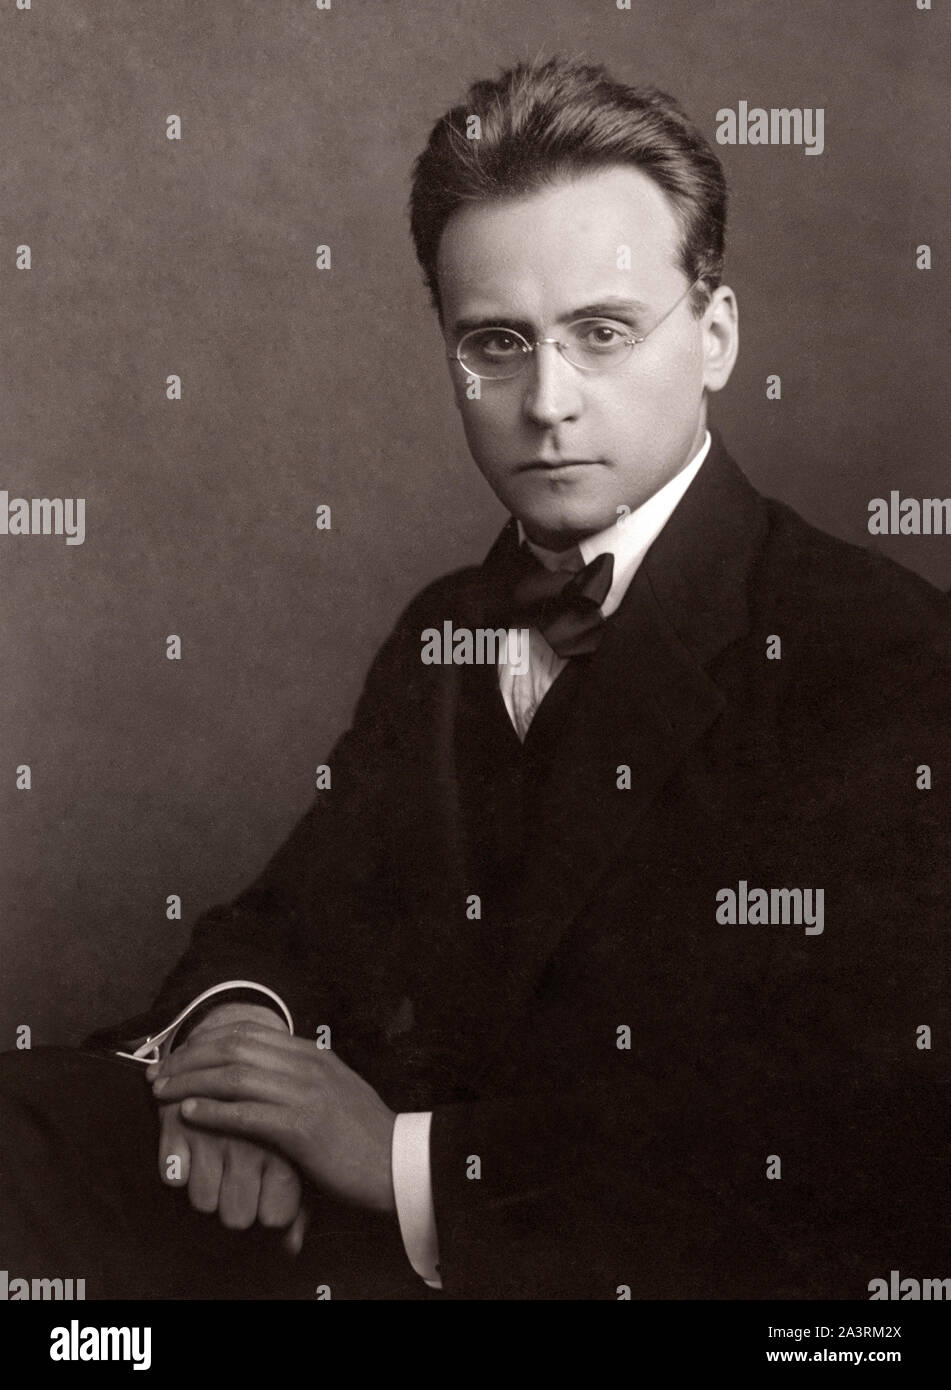 Anton Friedrich Wilhelm von Webern (1883 - 1945) fue un compositor y director de orquesta austriaco. Foto de stock